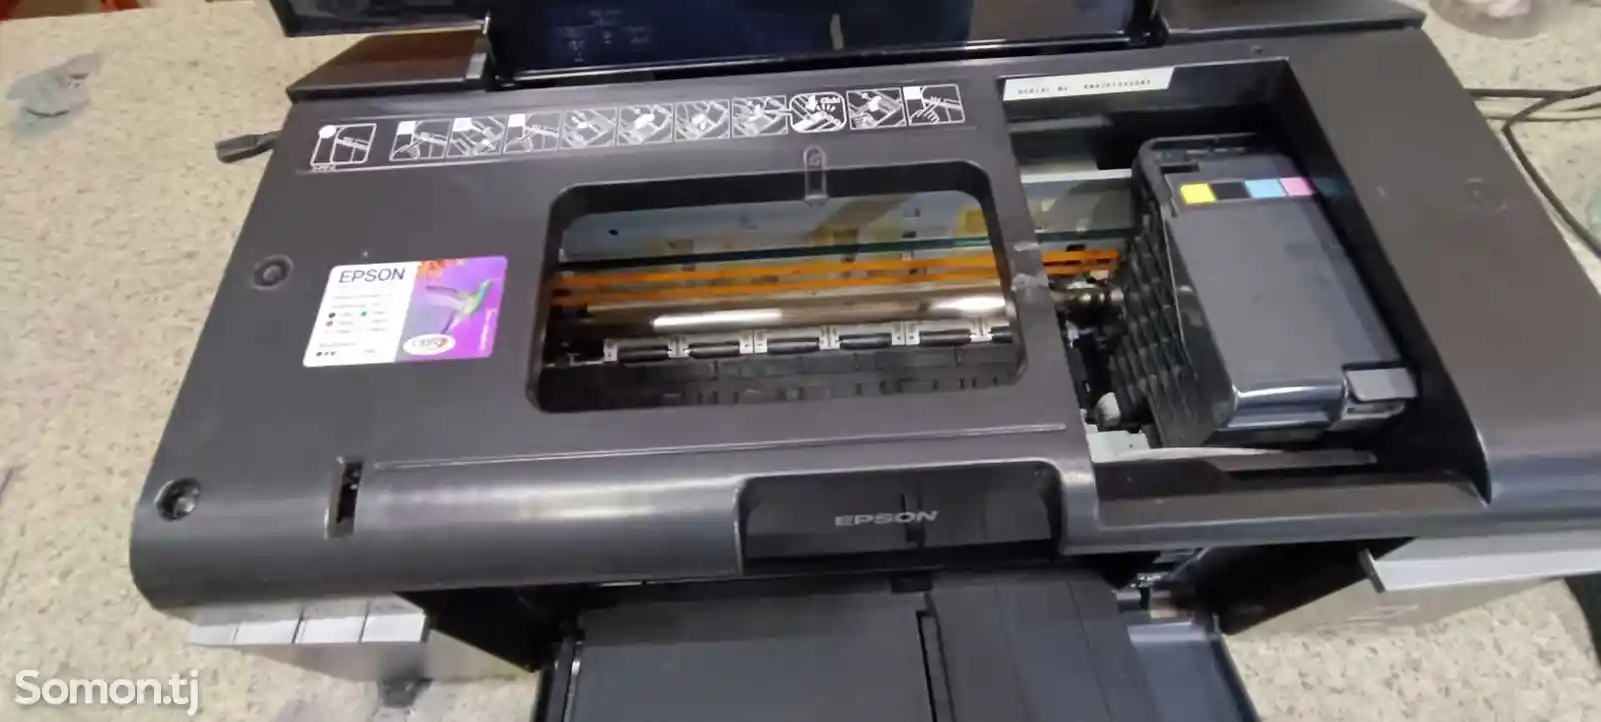 Цветной принтер Epson P50-3